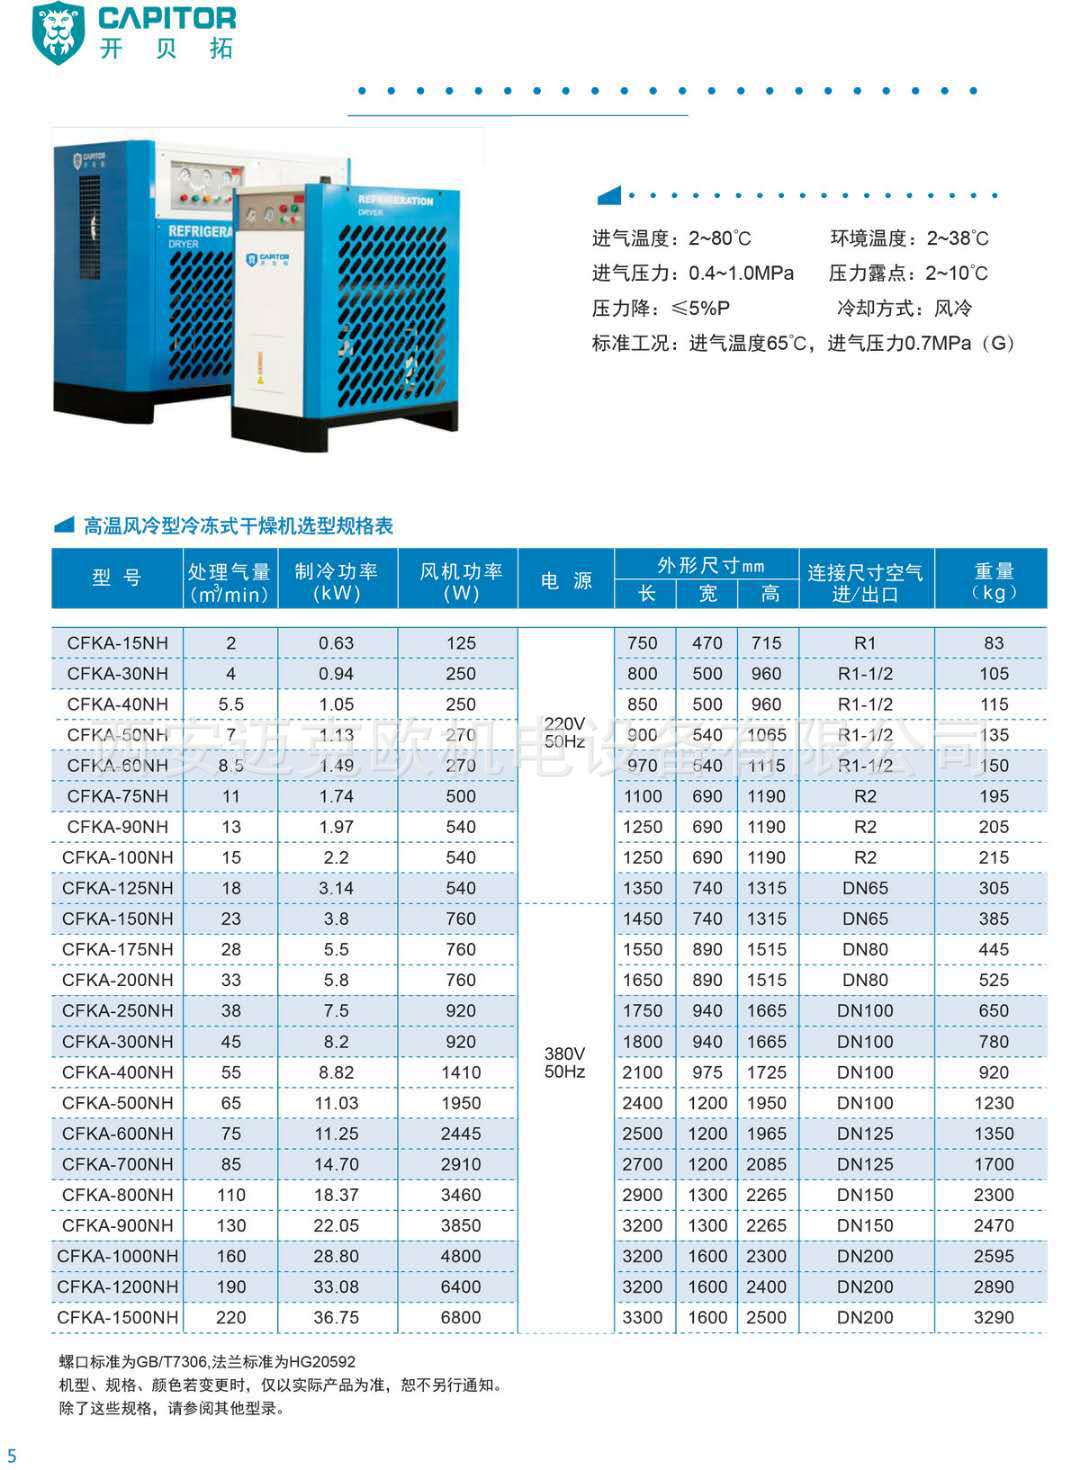 开贝拓冷干机、CFKA-250NH 、阿普达 38立方 风冷高温干燥机示例图5